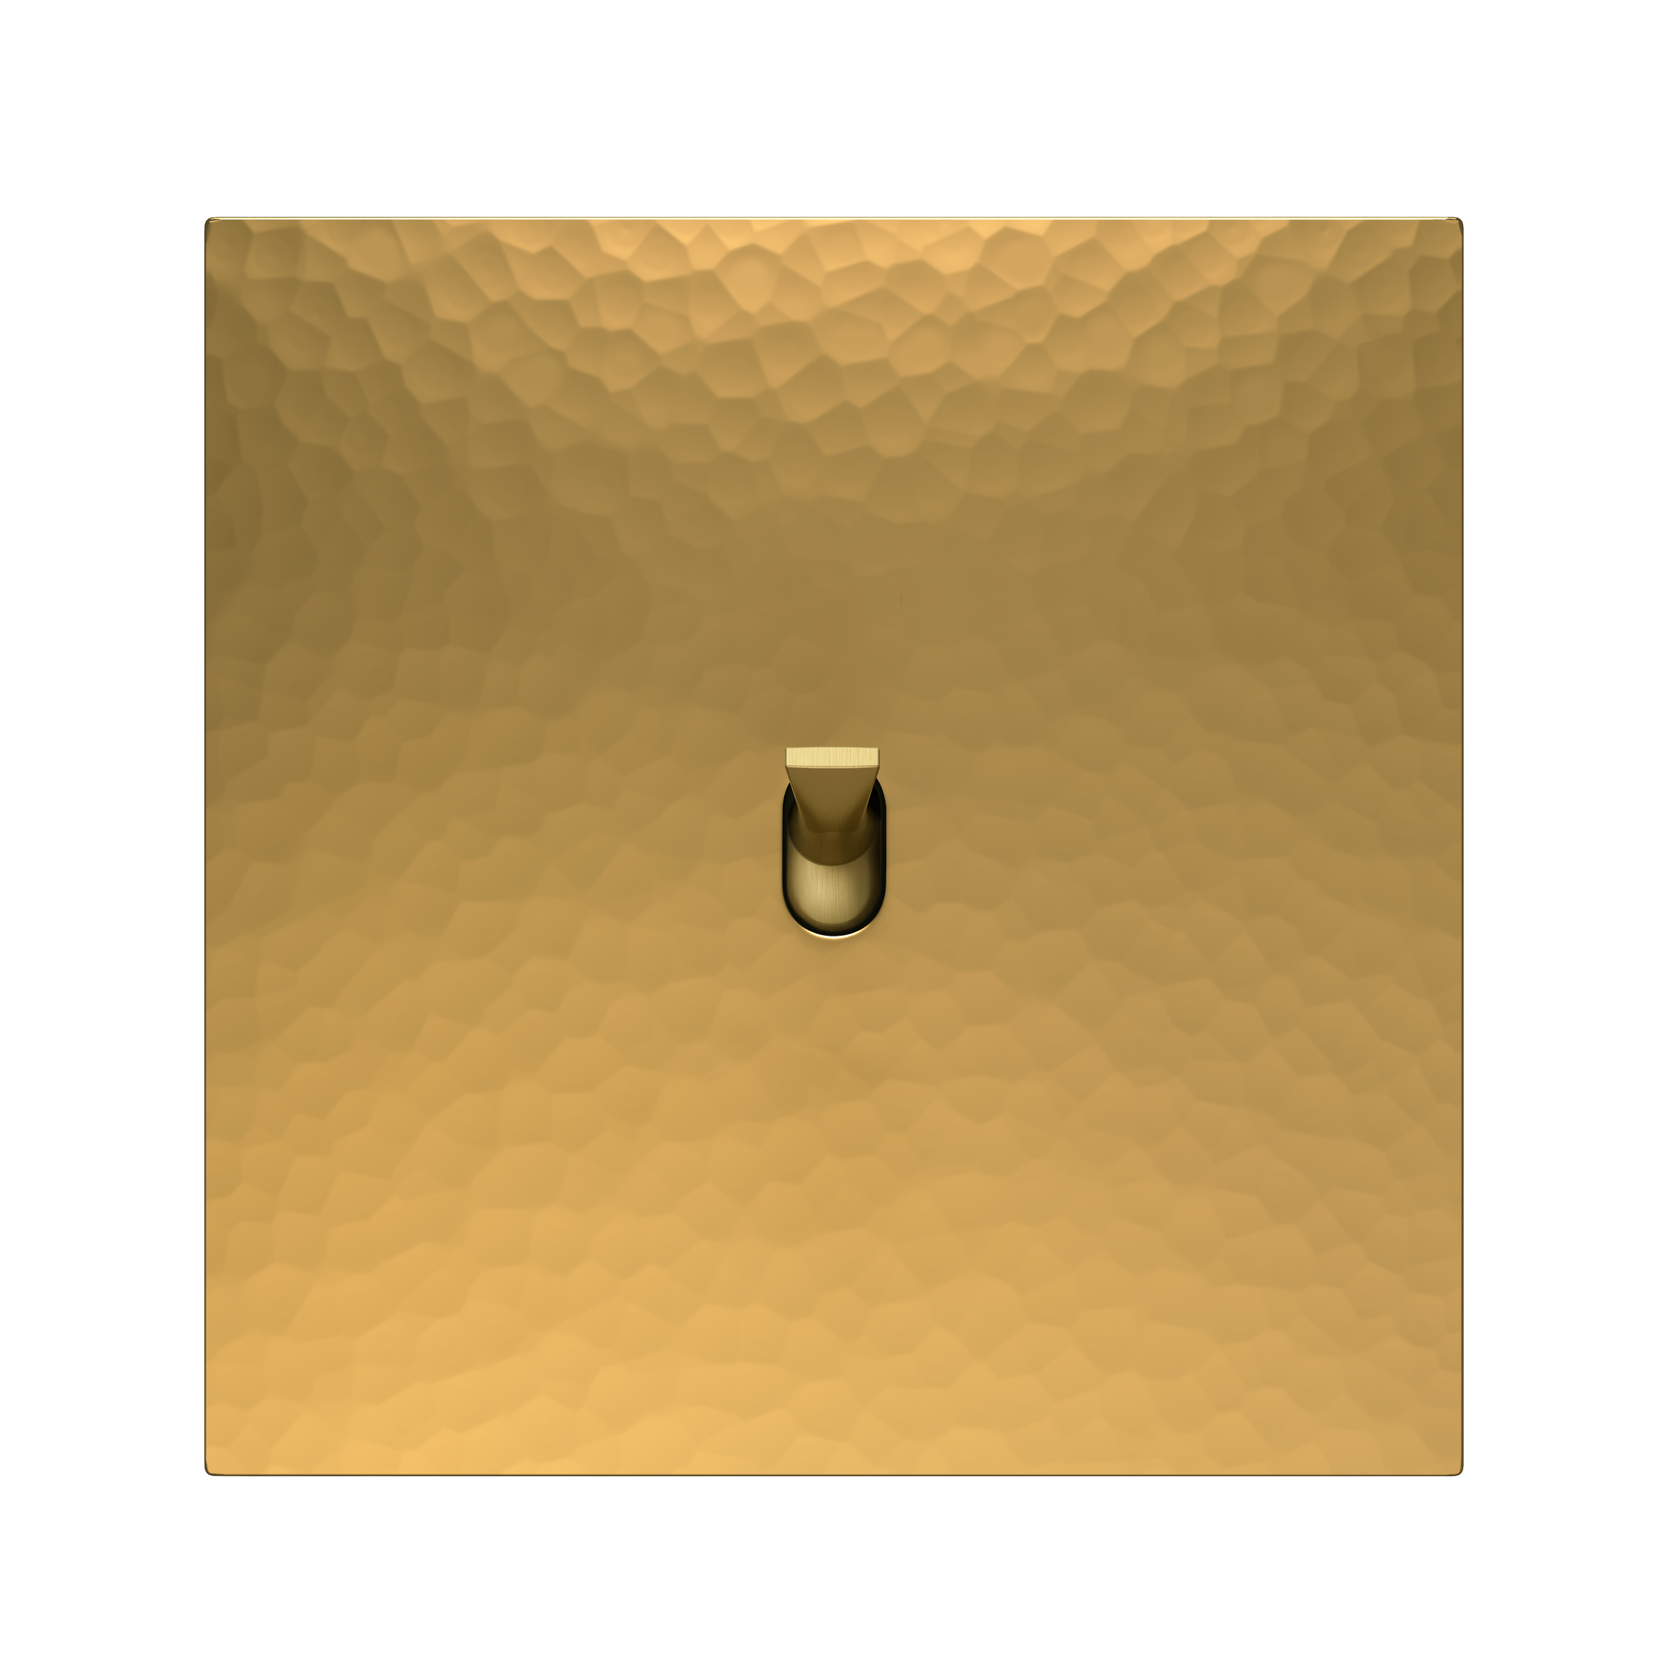 5.1 Switch in Martelé Golden Brass with a Matte Golden Knob